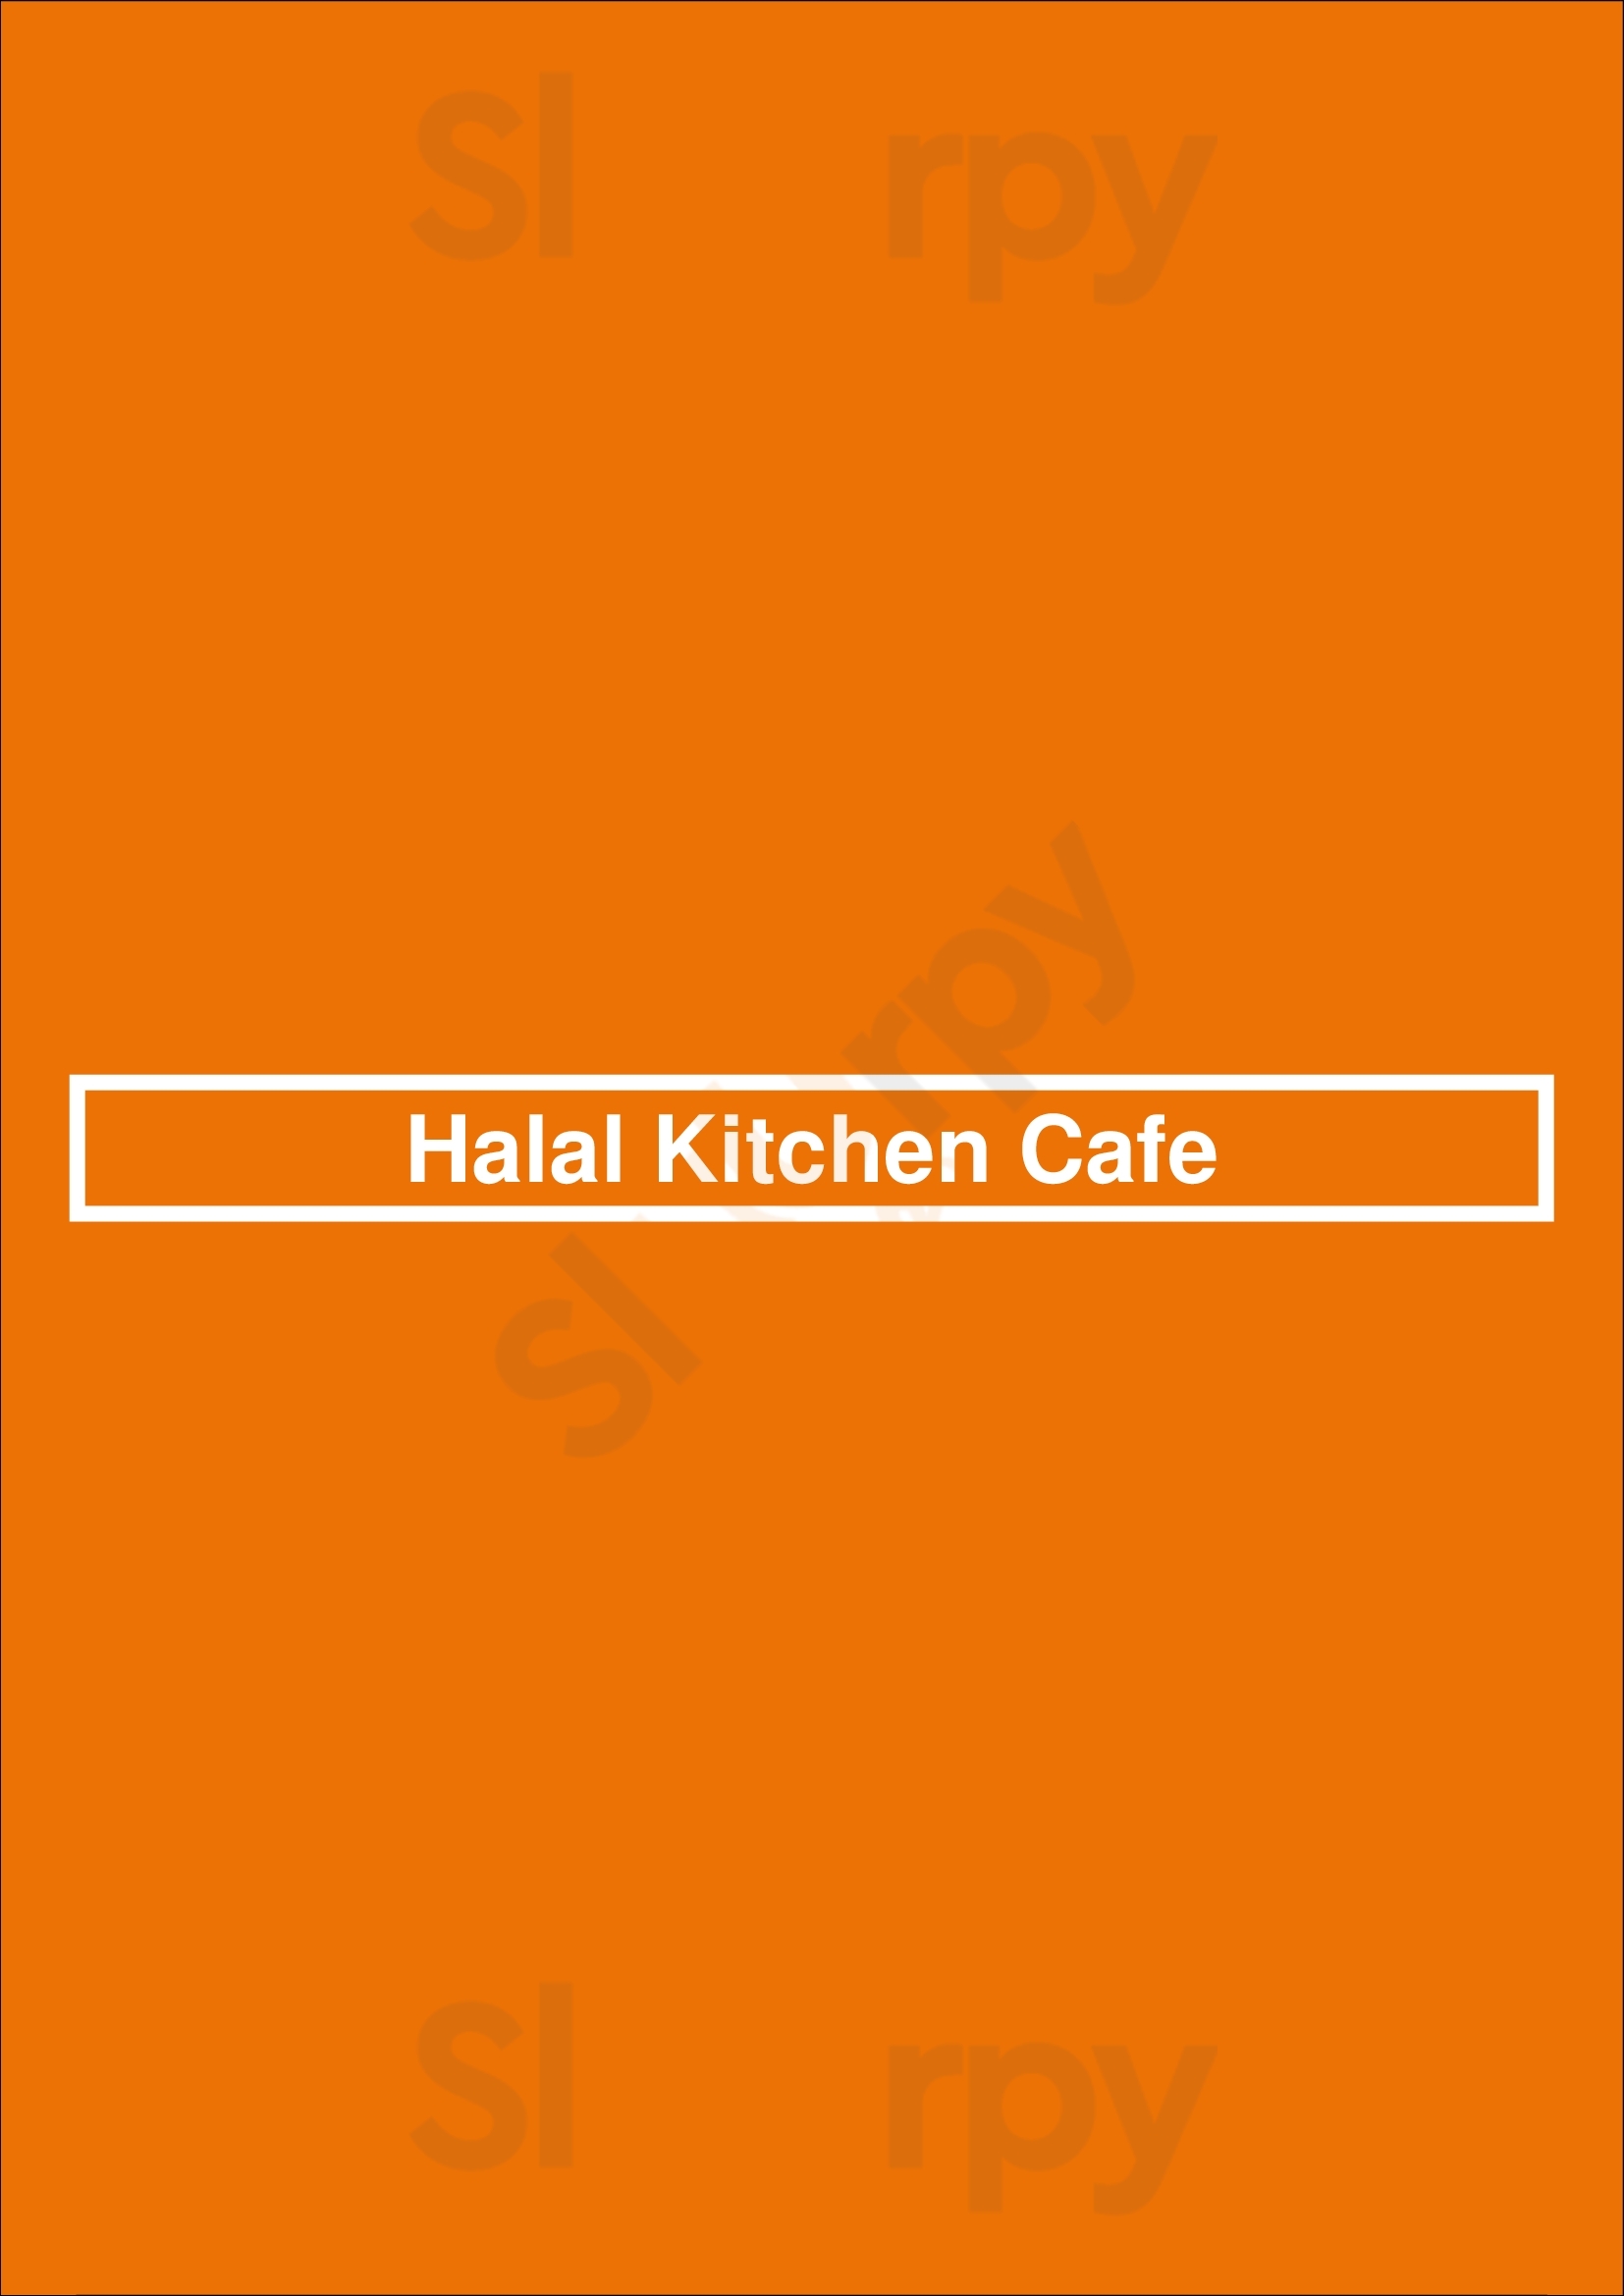 Halal Kitchen Cafe Los Angeles Menu - 1